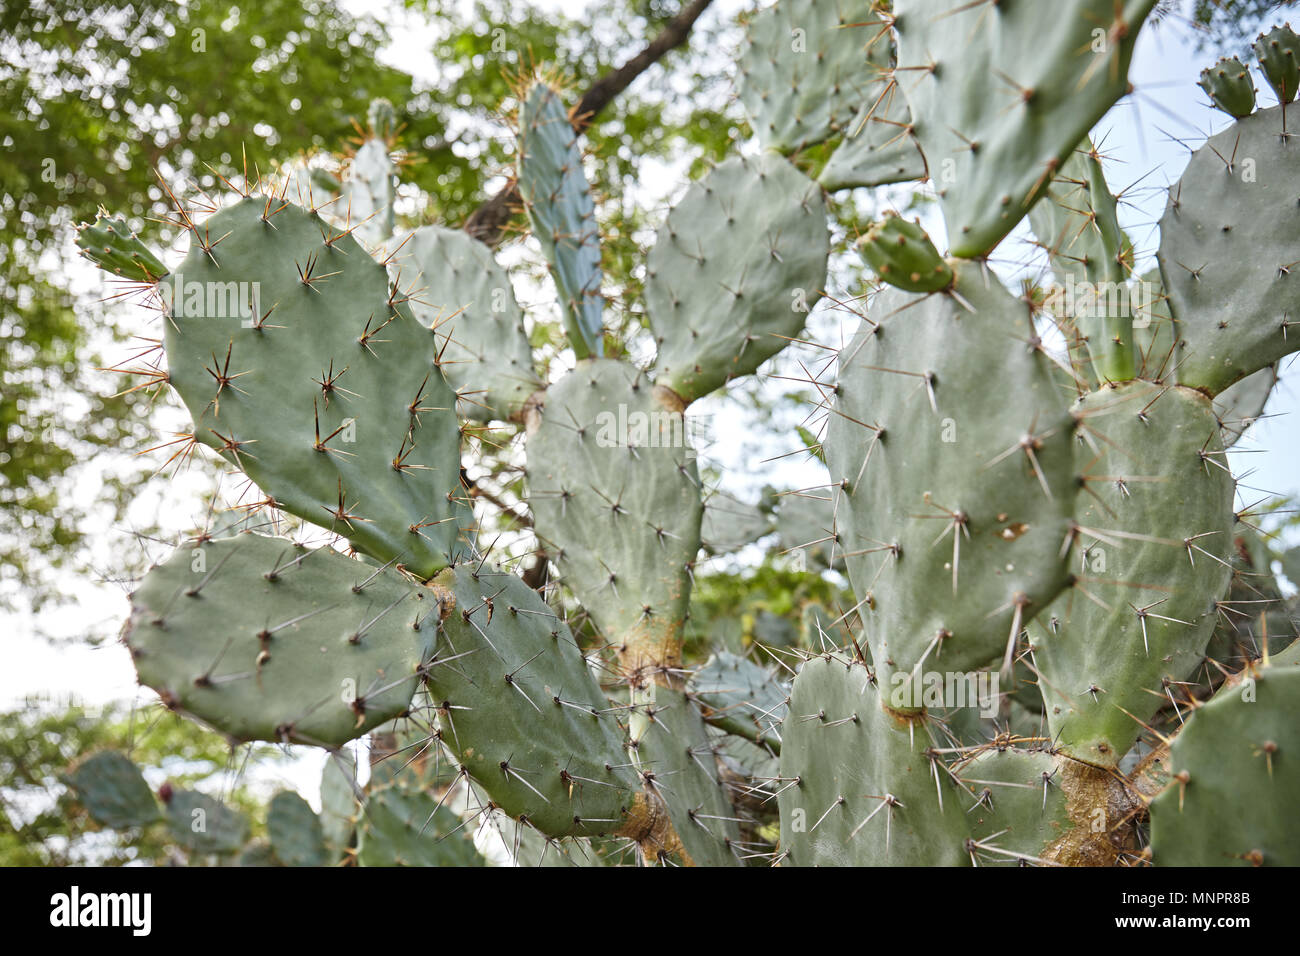 Die alten Kaktus auf Branchen, die in den Park mit vielen langen Dornen, die Sonne Licht und großen Baum im Hintergrund, Low Angle View. Stockfoto